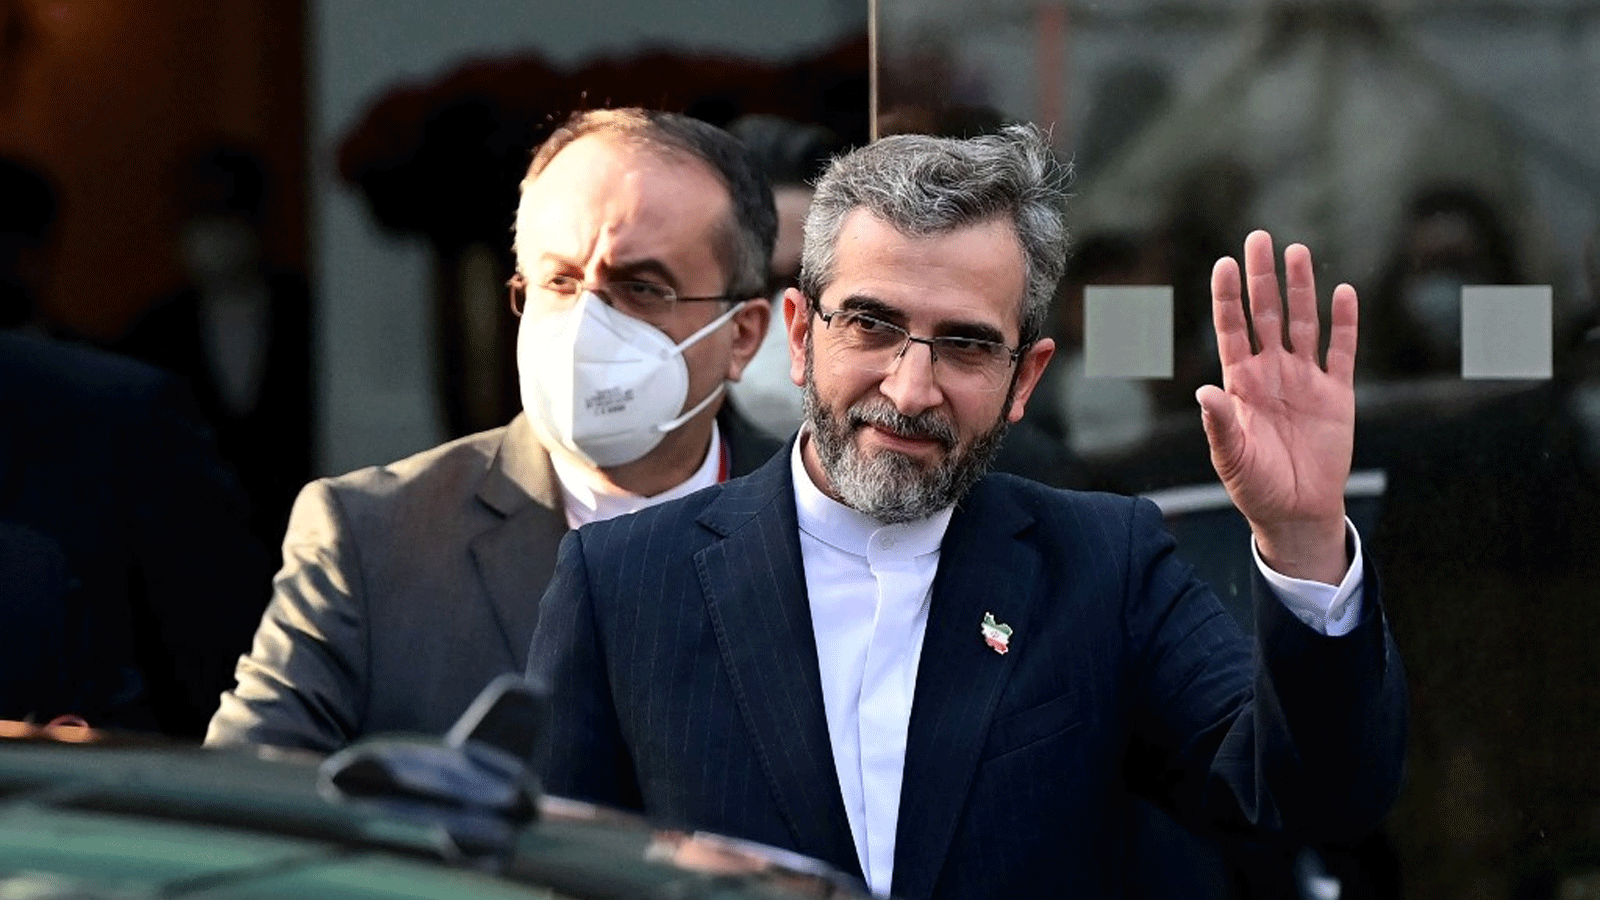 كبير المفاوضين النوويين في إيران علي باقري كاني خلال مغادرته قصر كوبورغ، مكان اجتماع خطة العمل الشاملة المشتركة (JCPOA) بهدف إحياء الاتفاق النووي الإيراني، في فيينا. 3 كانون الأول\ديسمبر 2021